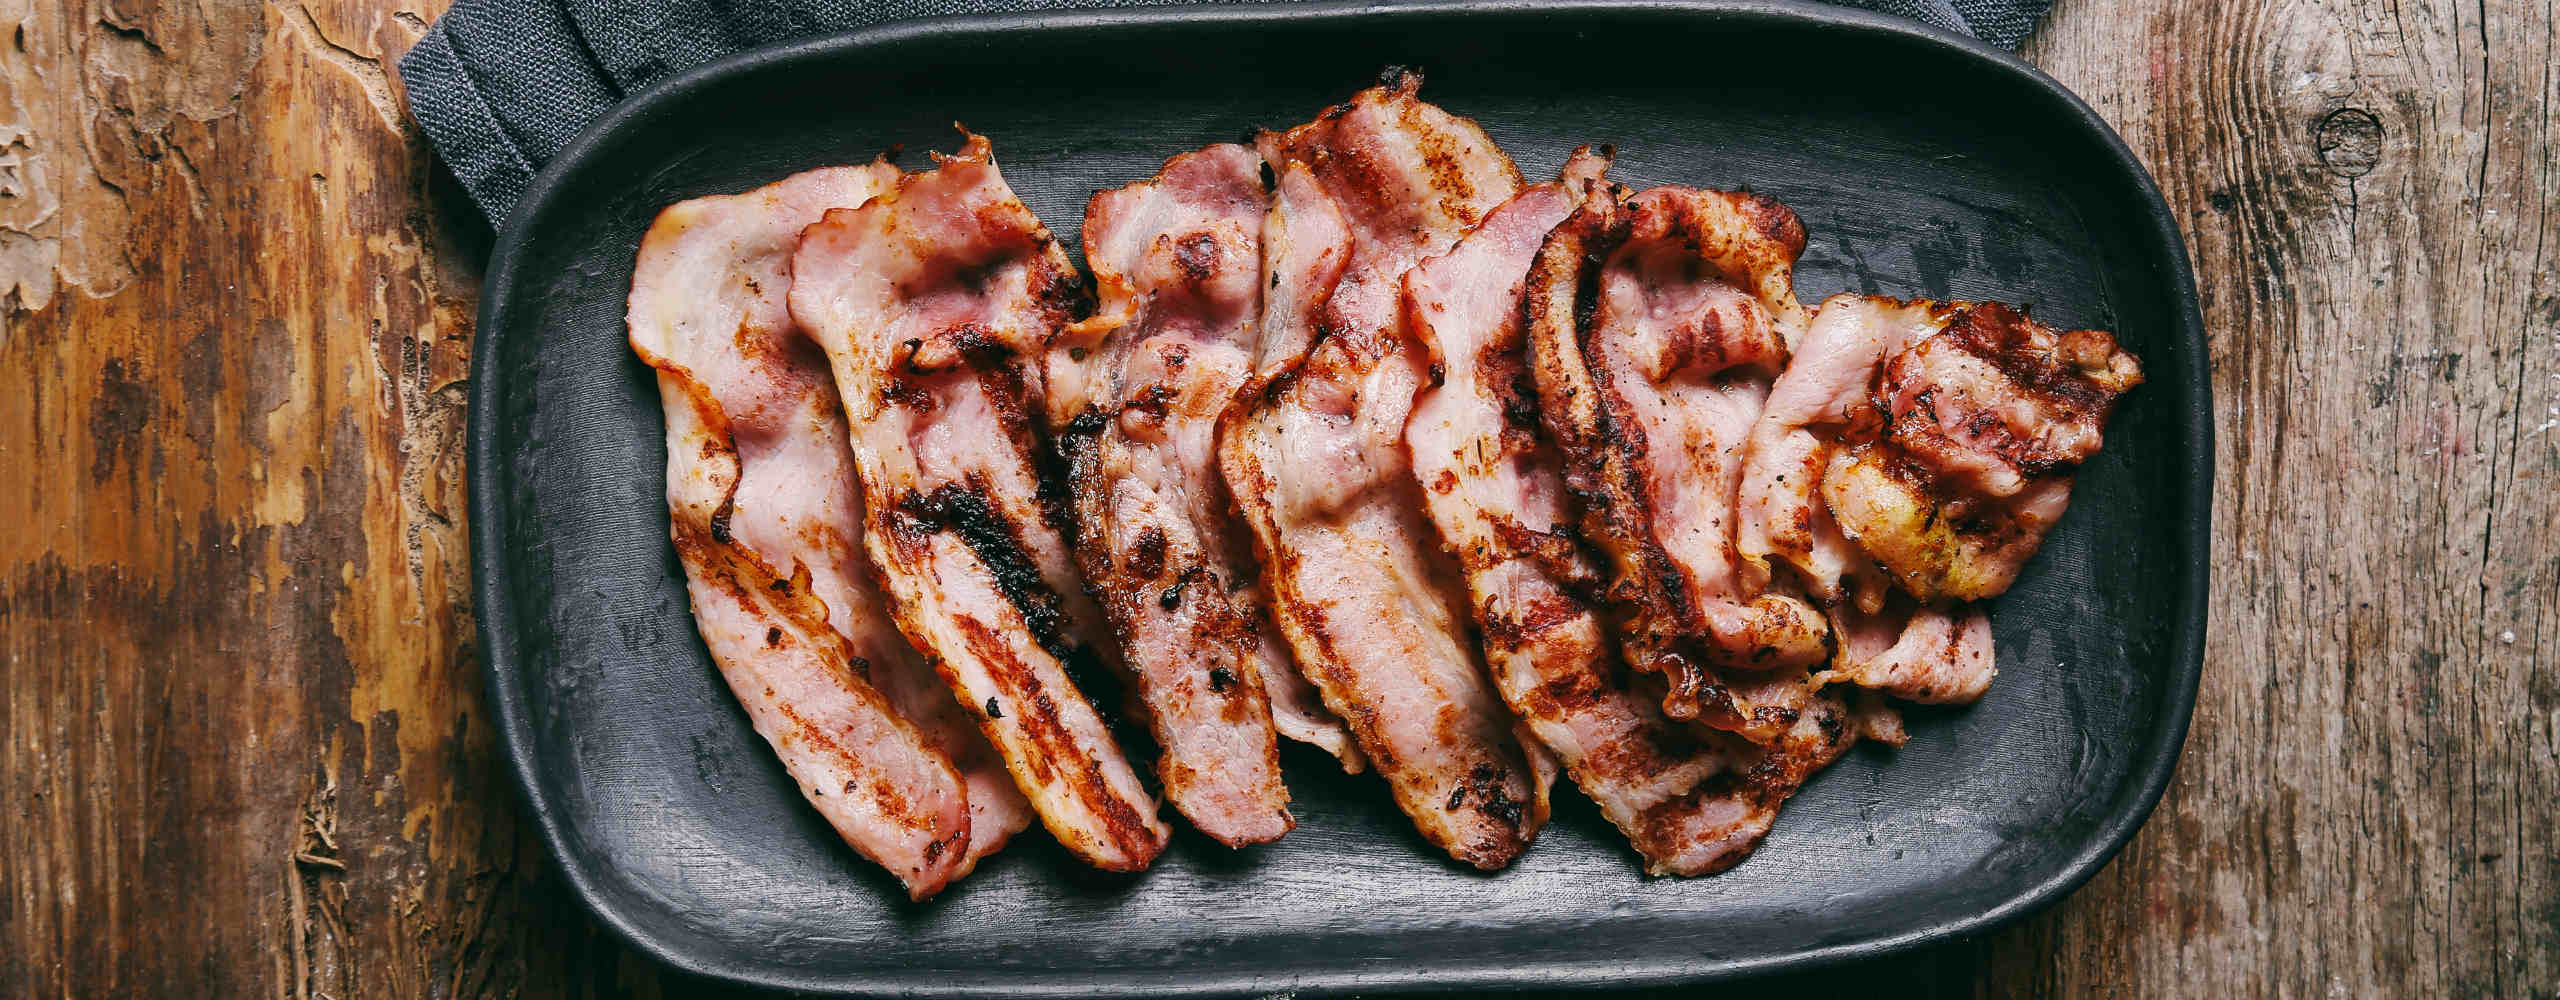 Bacon Festival